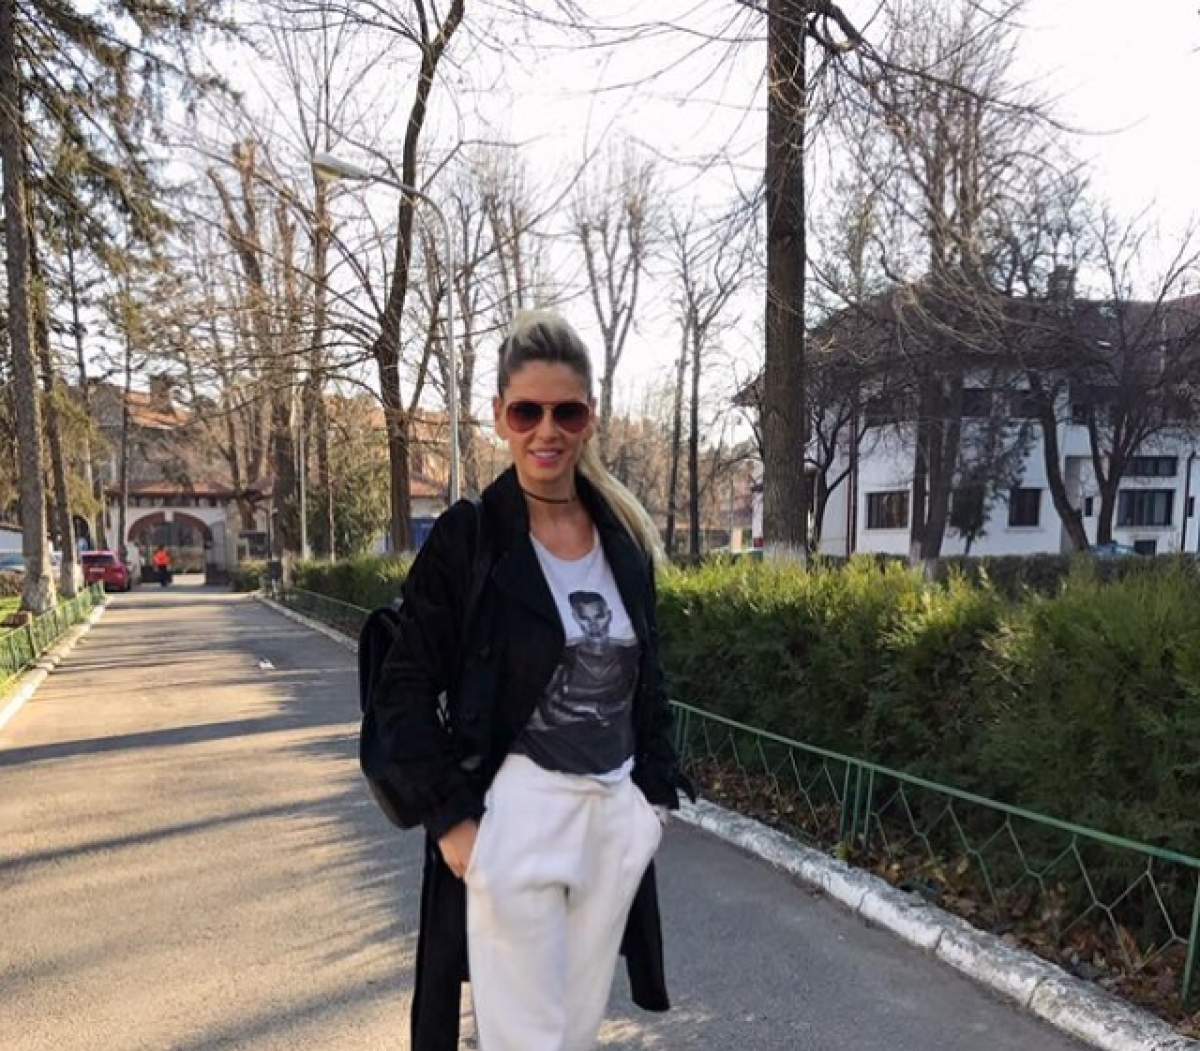 Andreea Bănică, mesaj foarte dur: "Mă plimb şi nu mă tem! Ar însemna să fac ce vor gunoaiele"